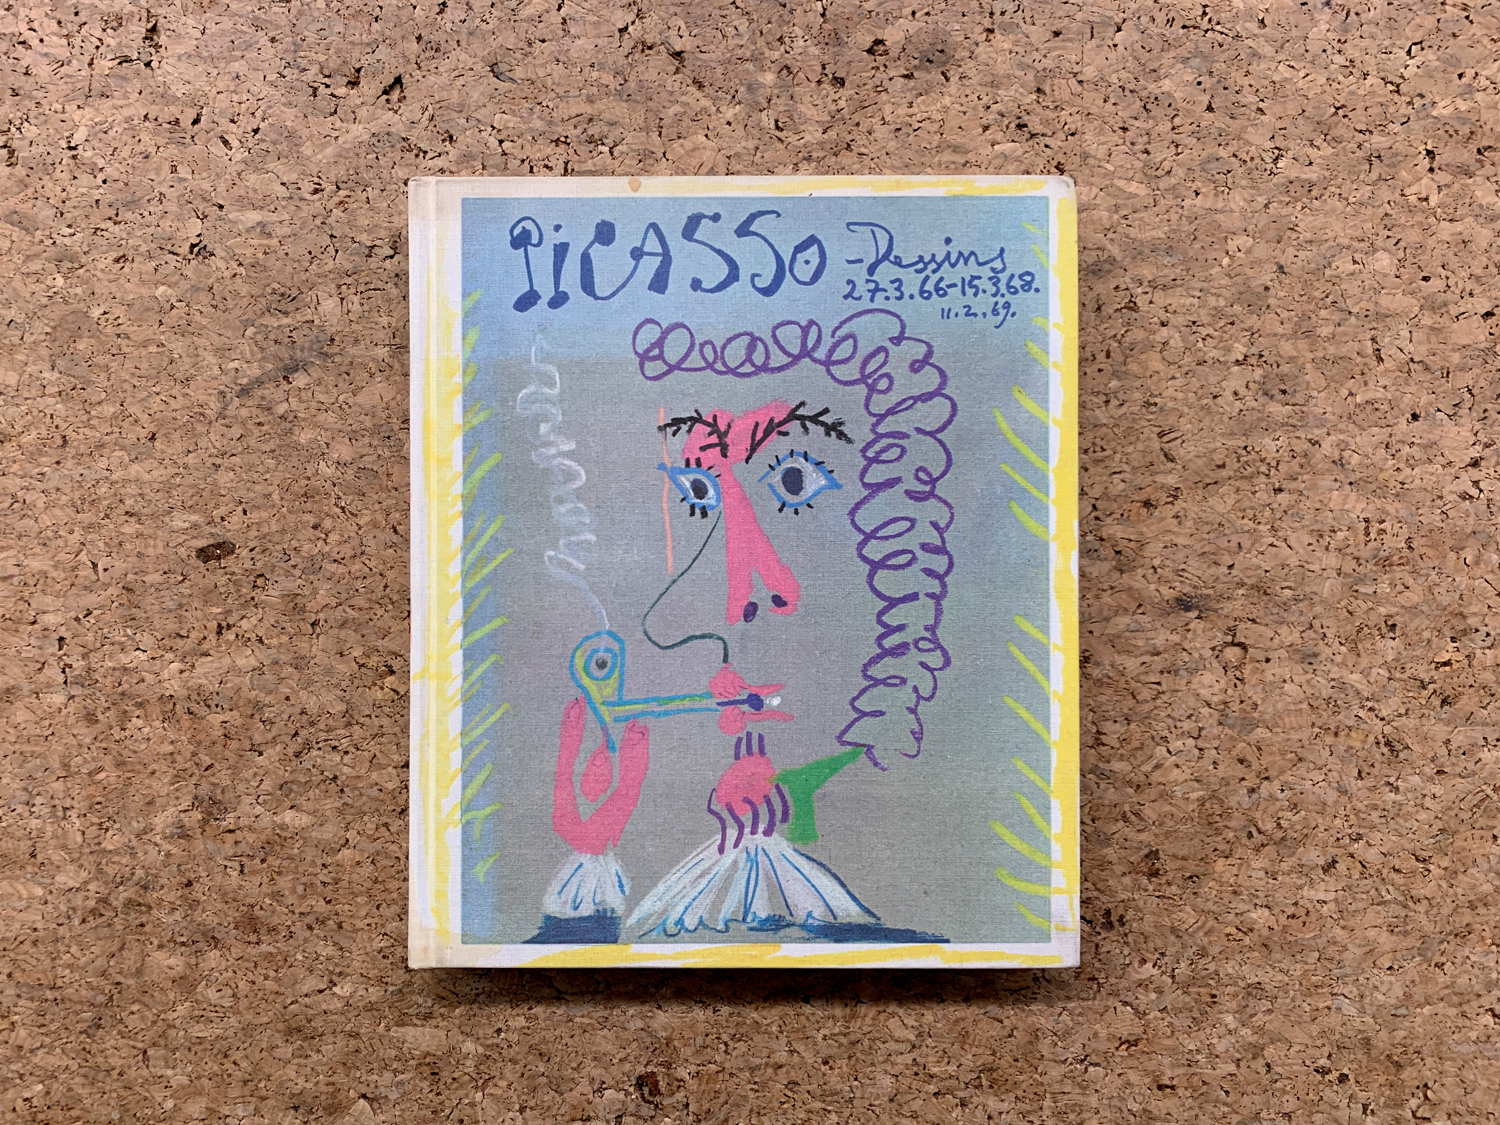 PABLO PICASSO - Picasso. Disegni 27.3.66-15.3.68, 1969